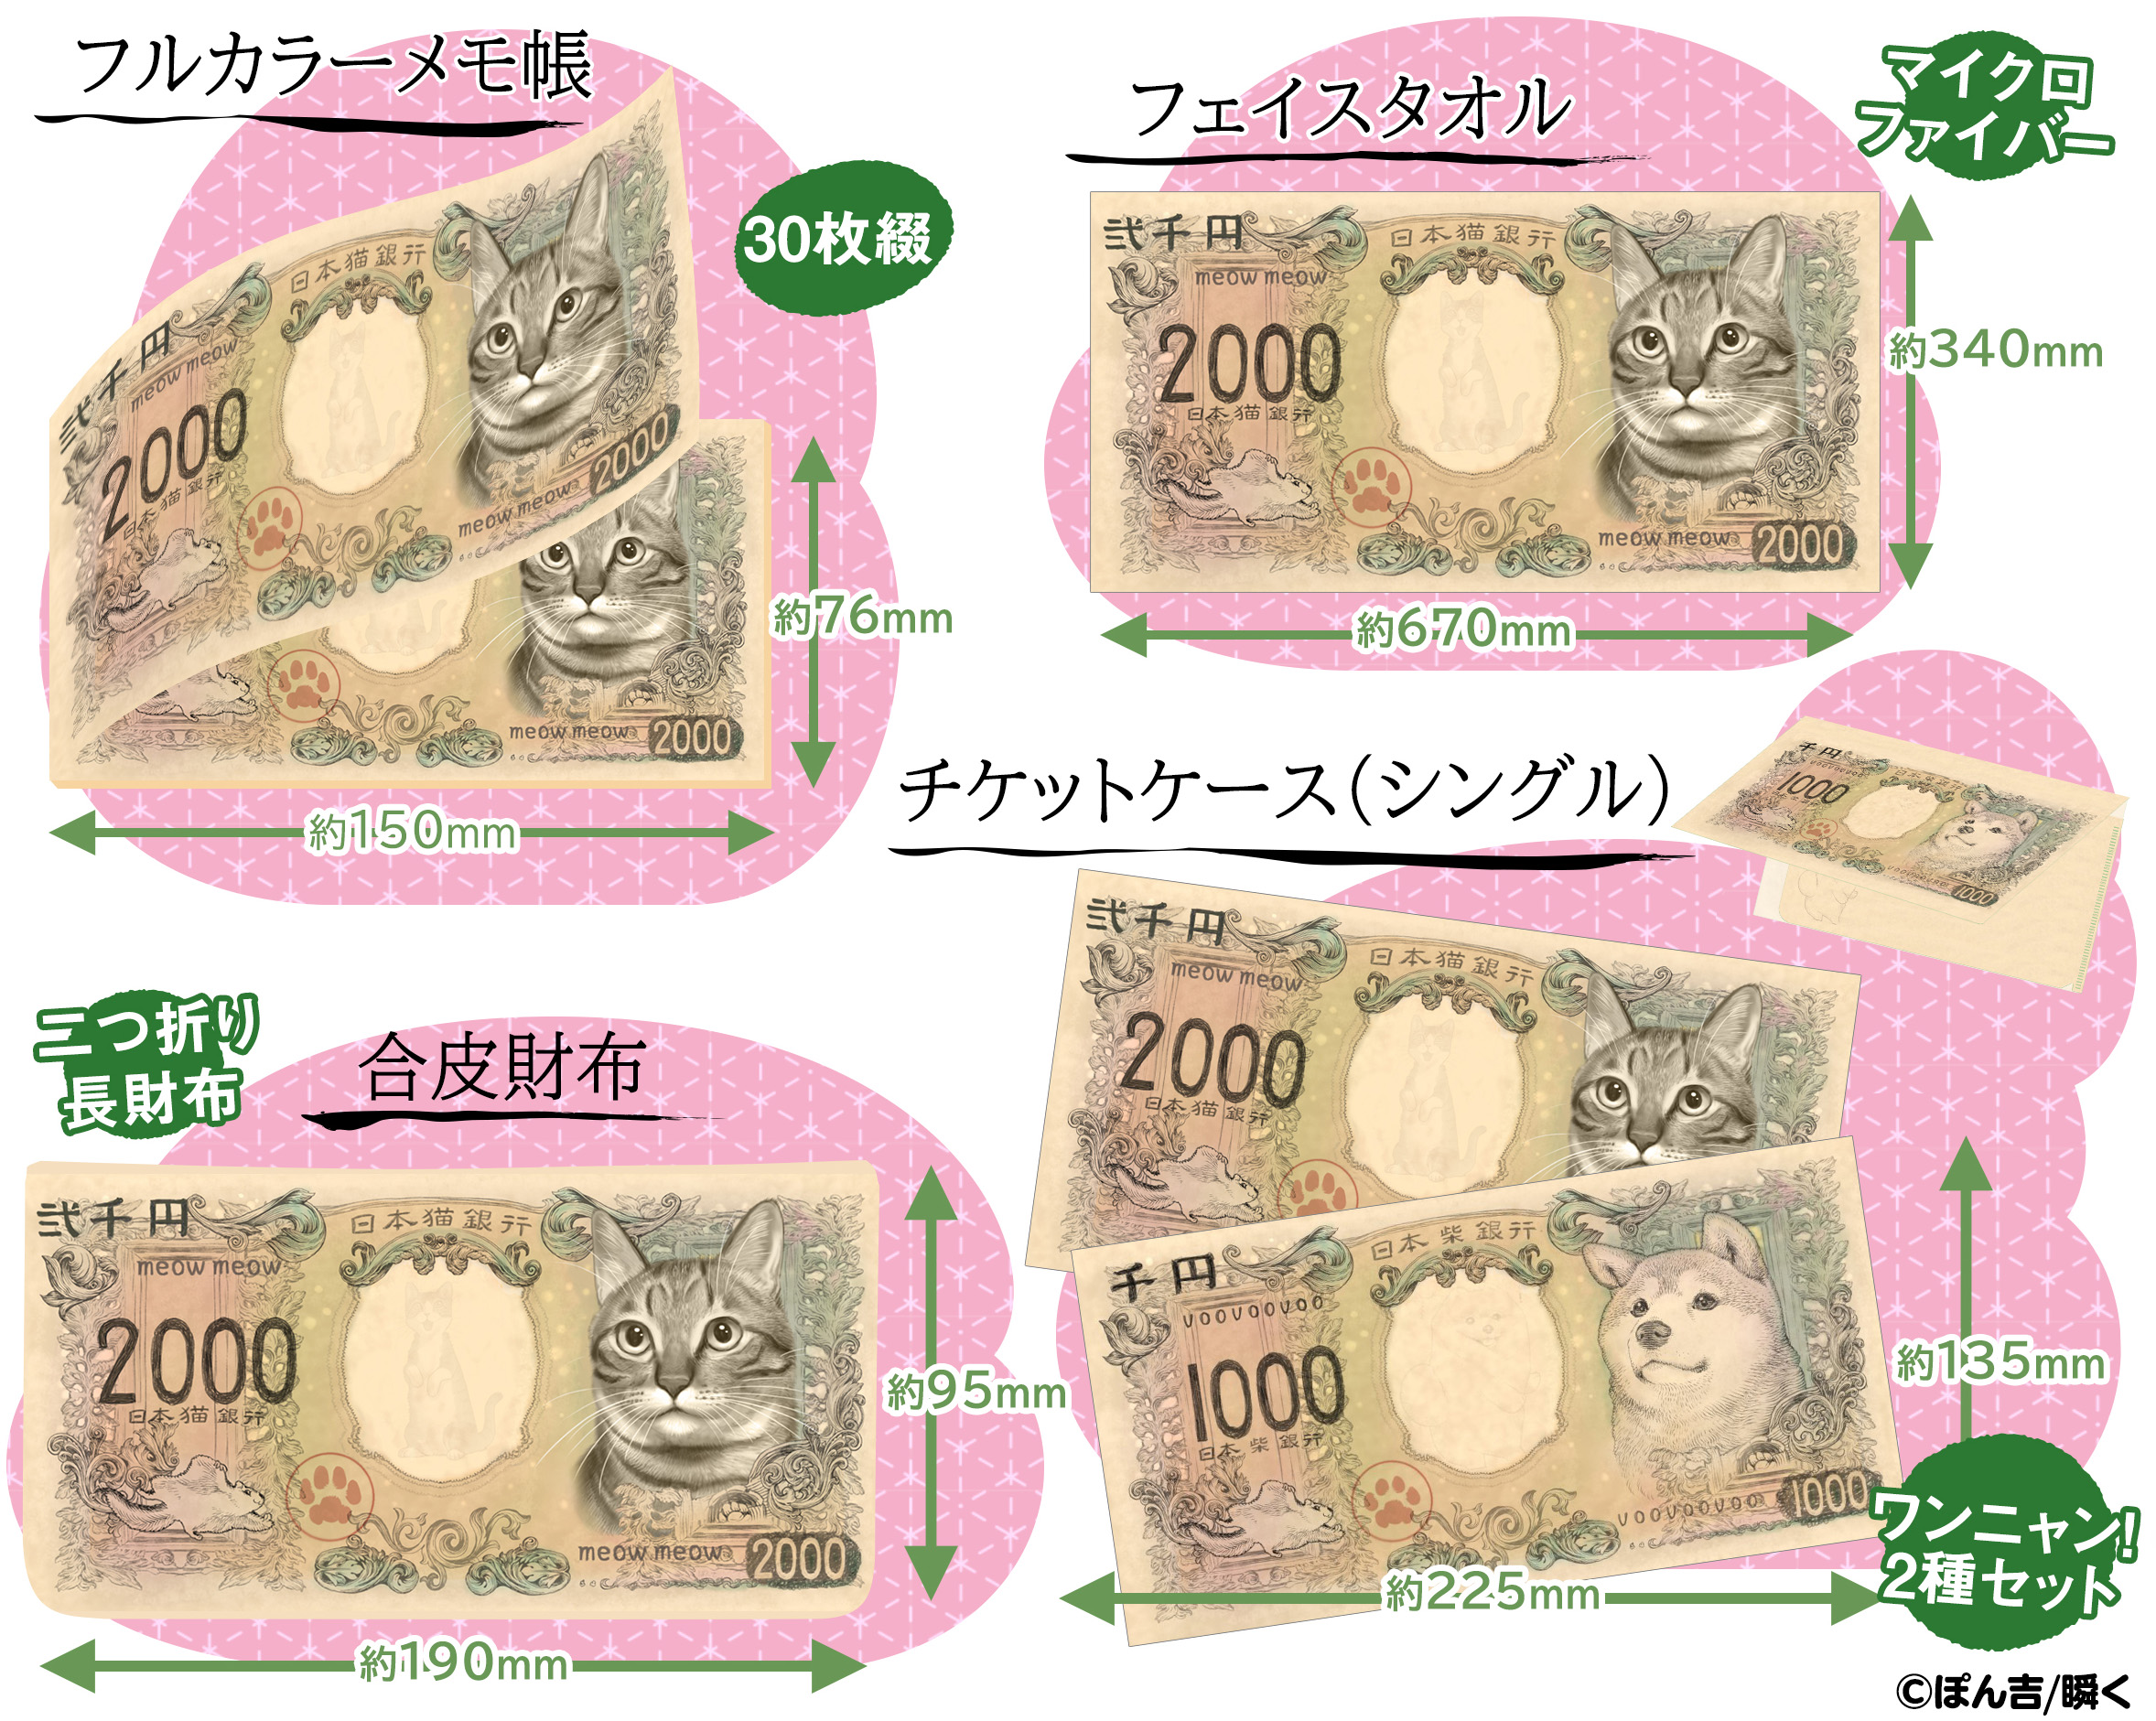 柴犬紙幣の次は 猫 が登場 大反響の 猫の紙幣 が商品化 株式